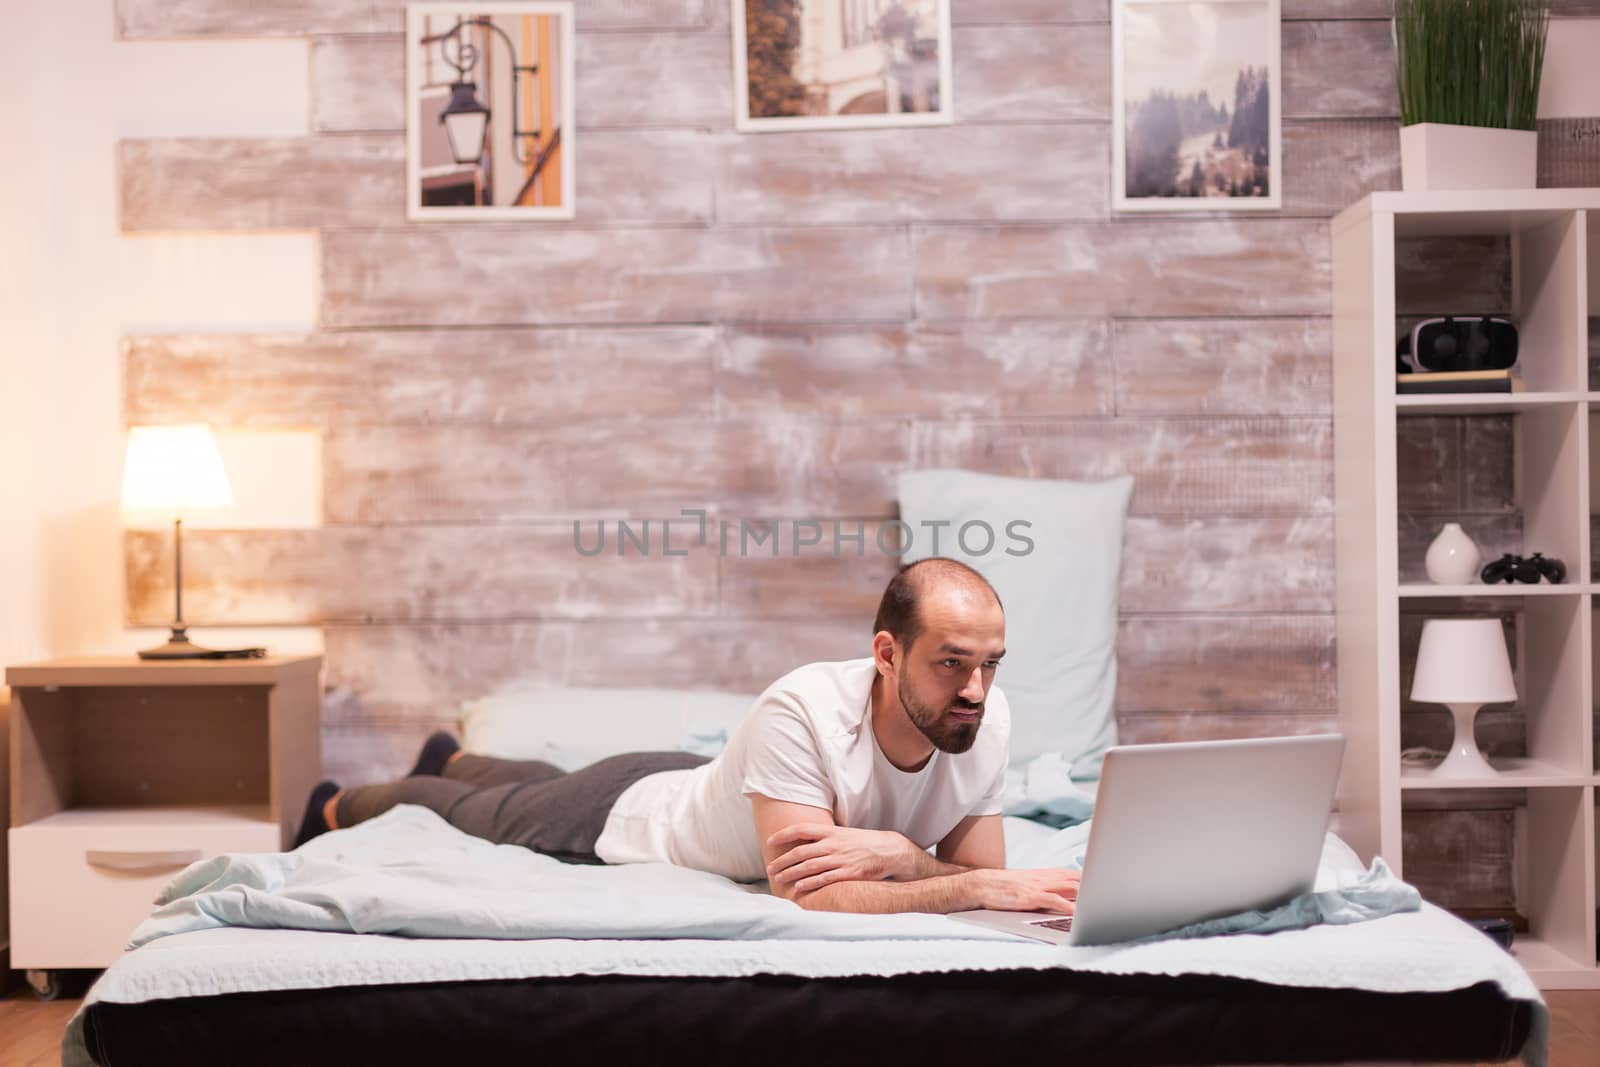 Man browsing on laptop at night in bed wearing pajamas.